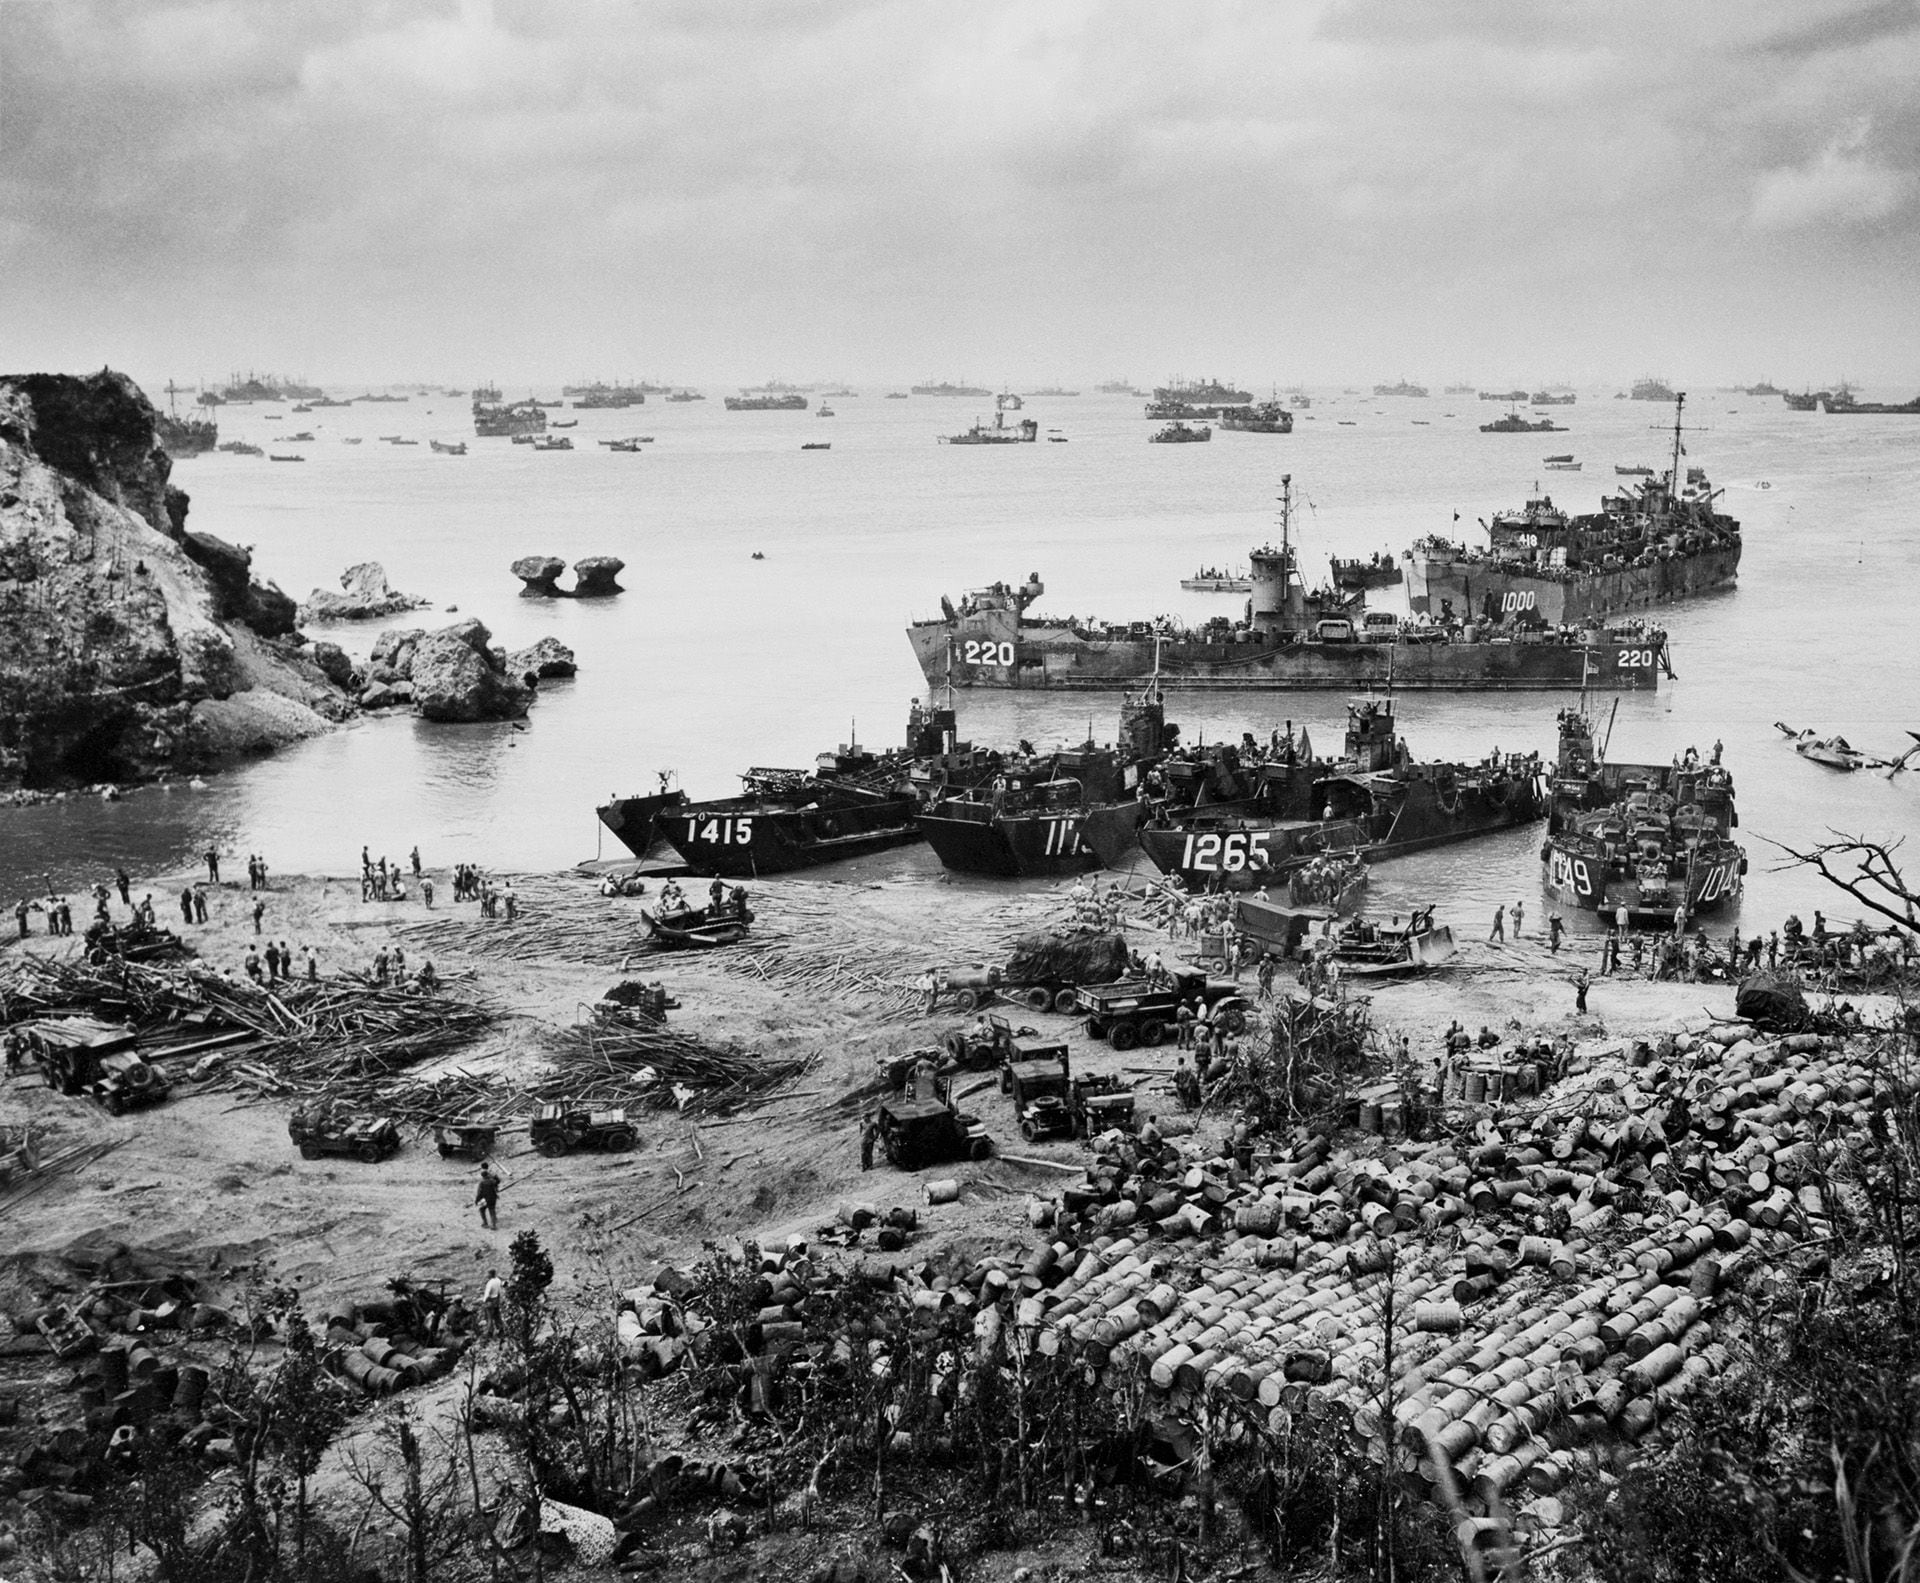 El 13 de agosto, los aliados empezaron a dudar de las reales intenciones japonesas. Les habían exigido aceptar la rendición sin limitaciones, pero del otro lado sólo había silencio (Getty Images)